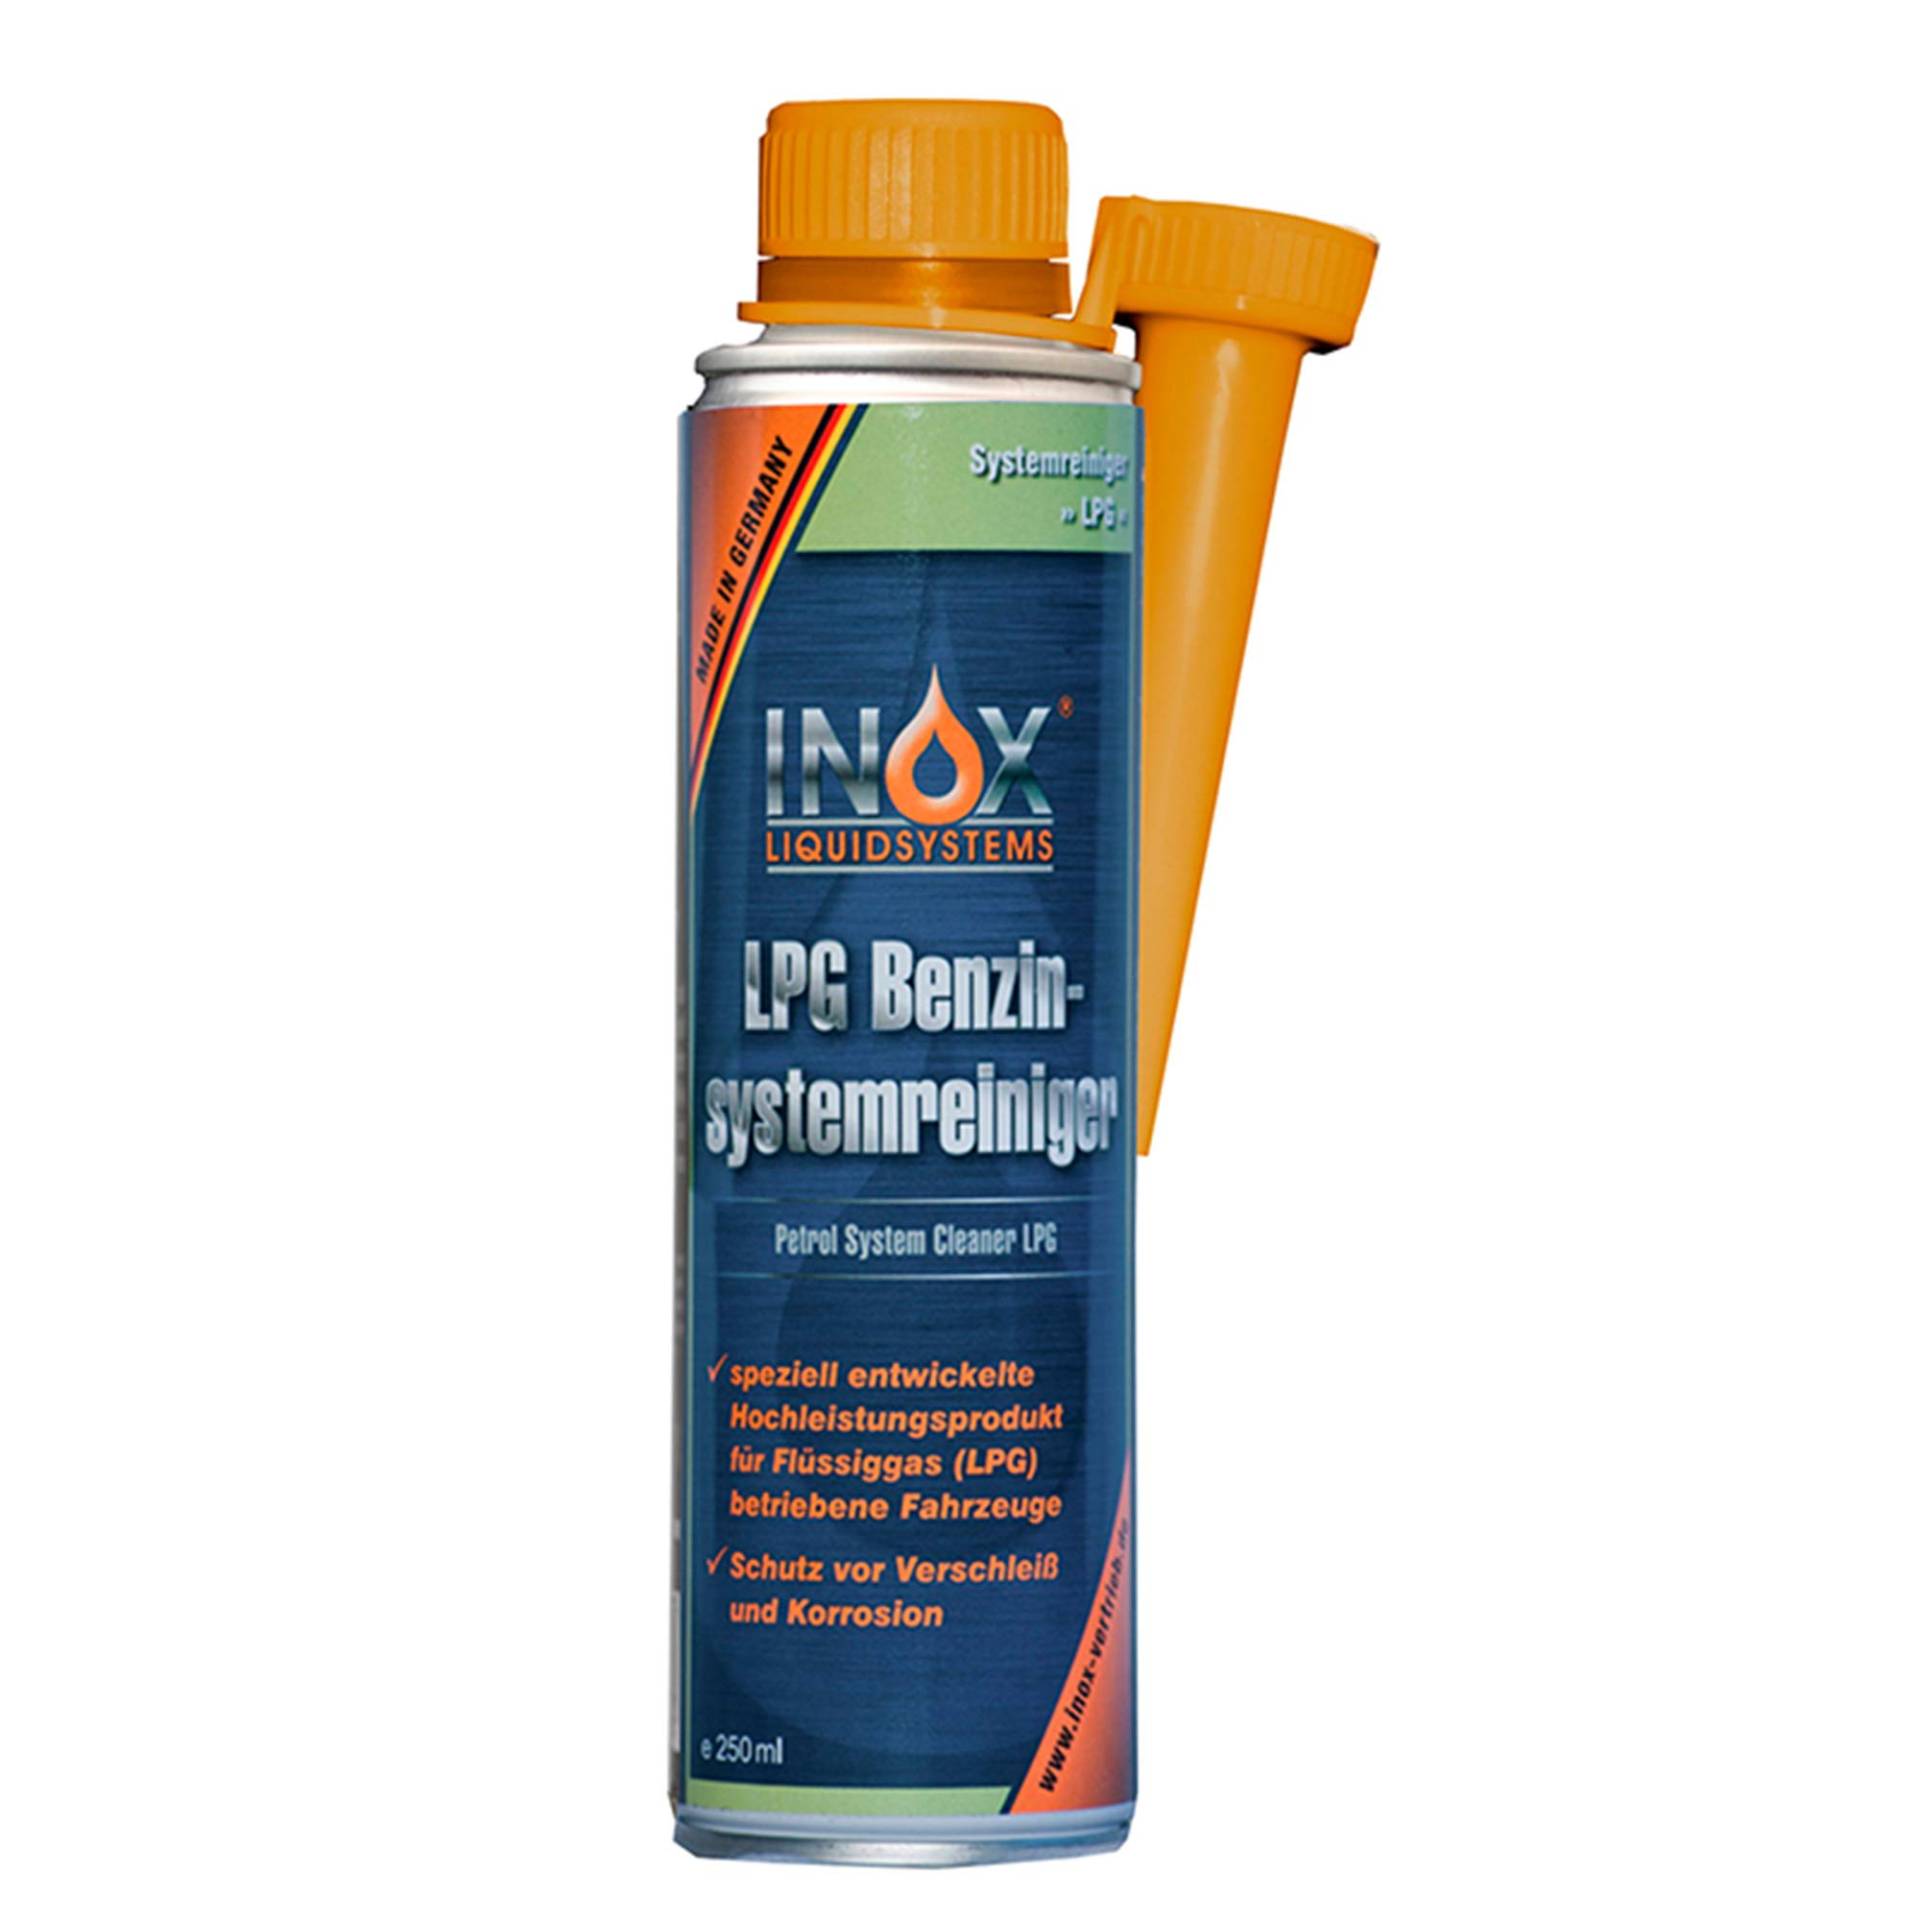 INOX® LPG Benzinsystemreiniger Additiv, 250ml - Systemreiniger für Autos mit Gasanlage von INOX-LIQUIDSYSTEMS